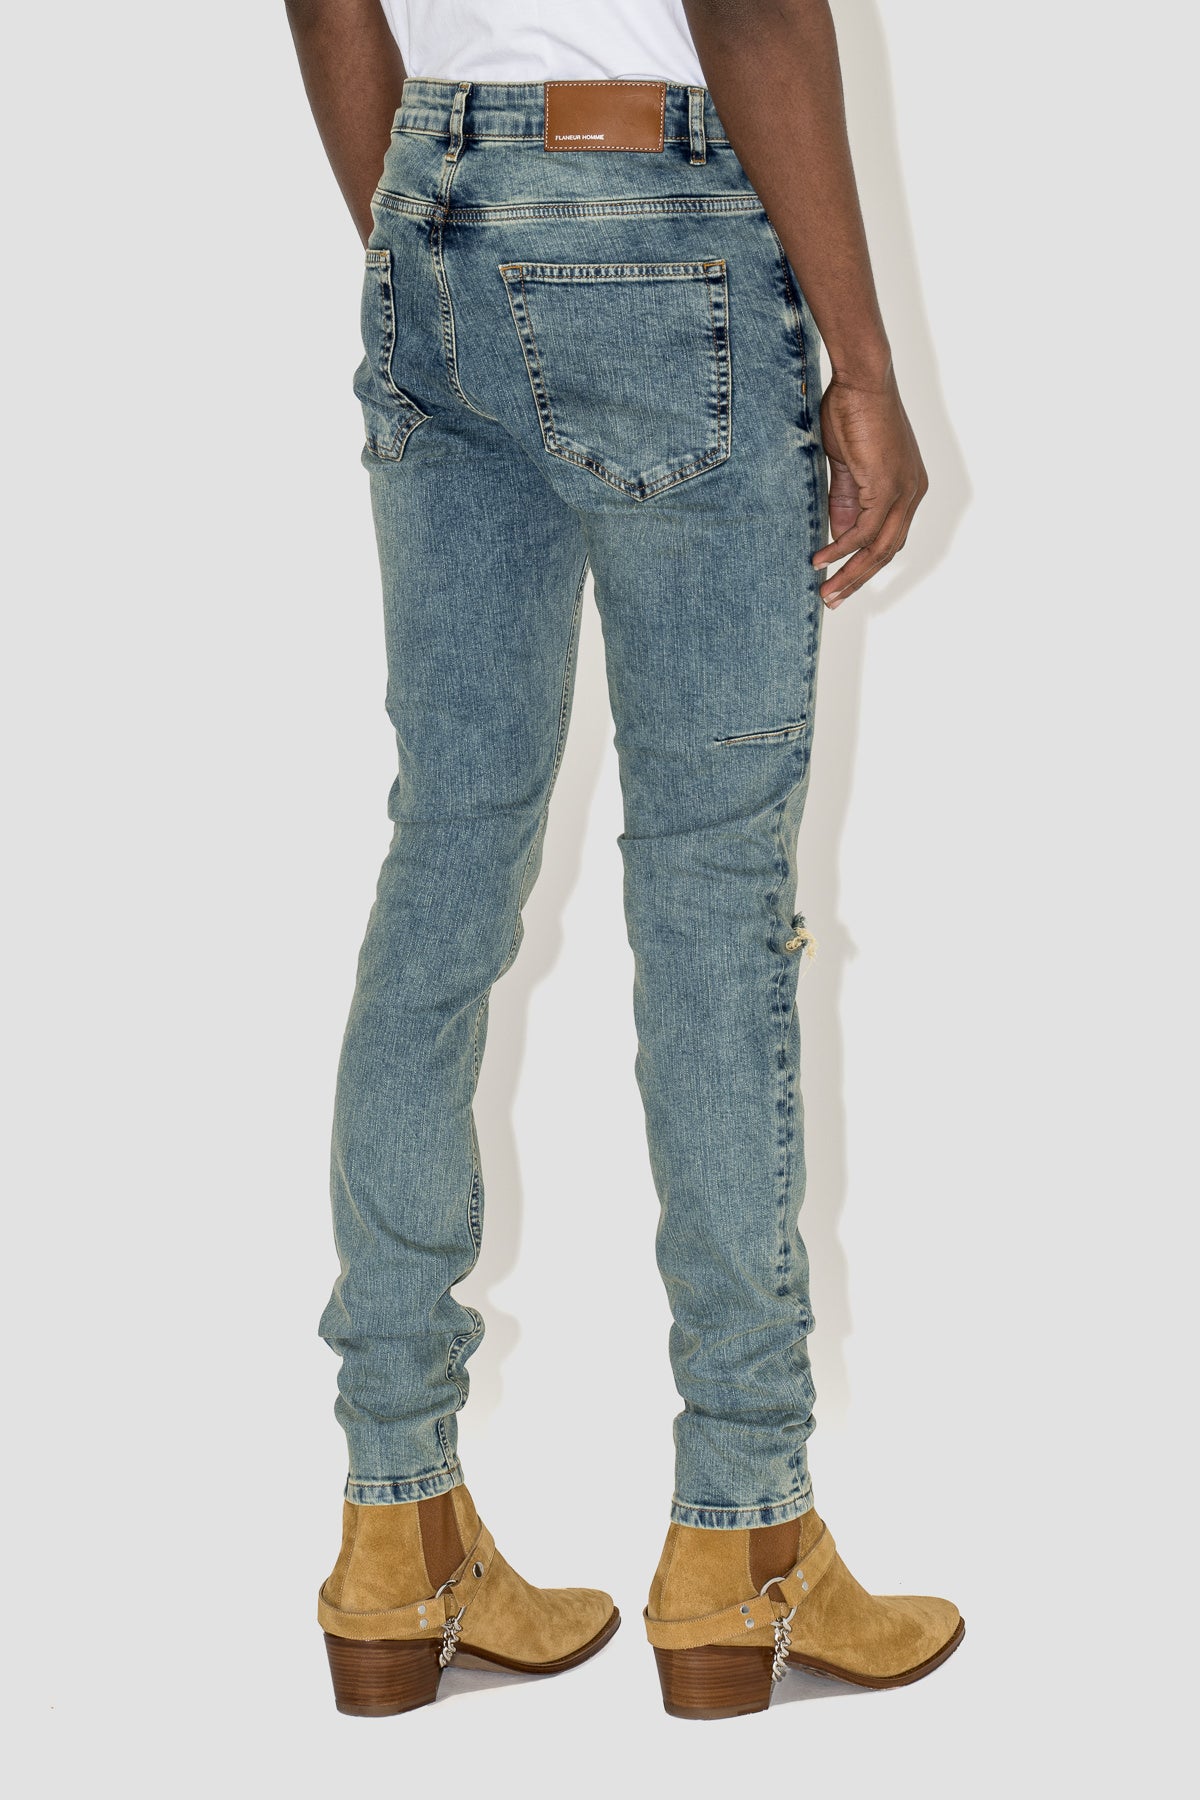 Destroyer Skinny Jeans in Opal Washed Denim